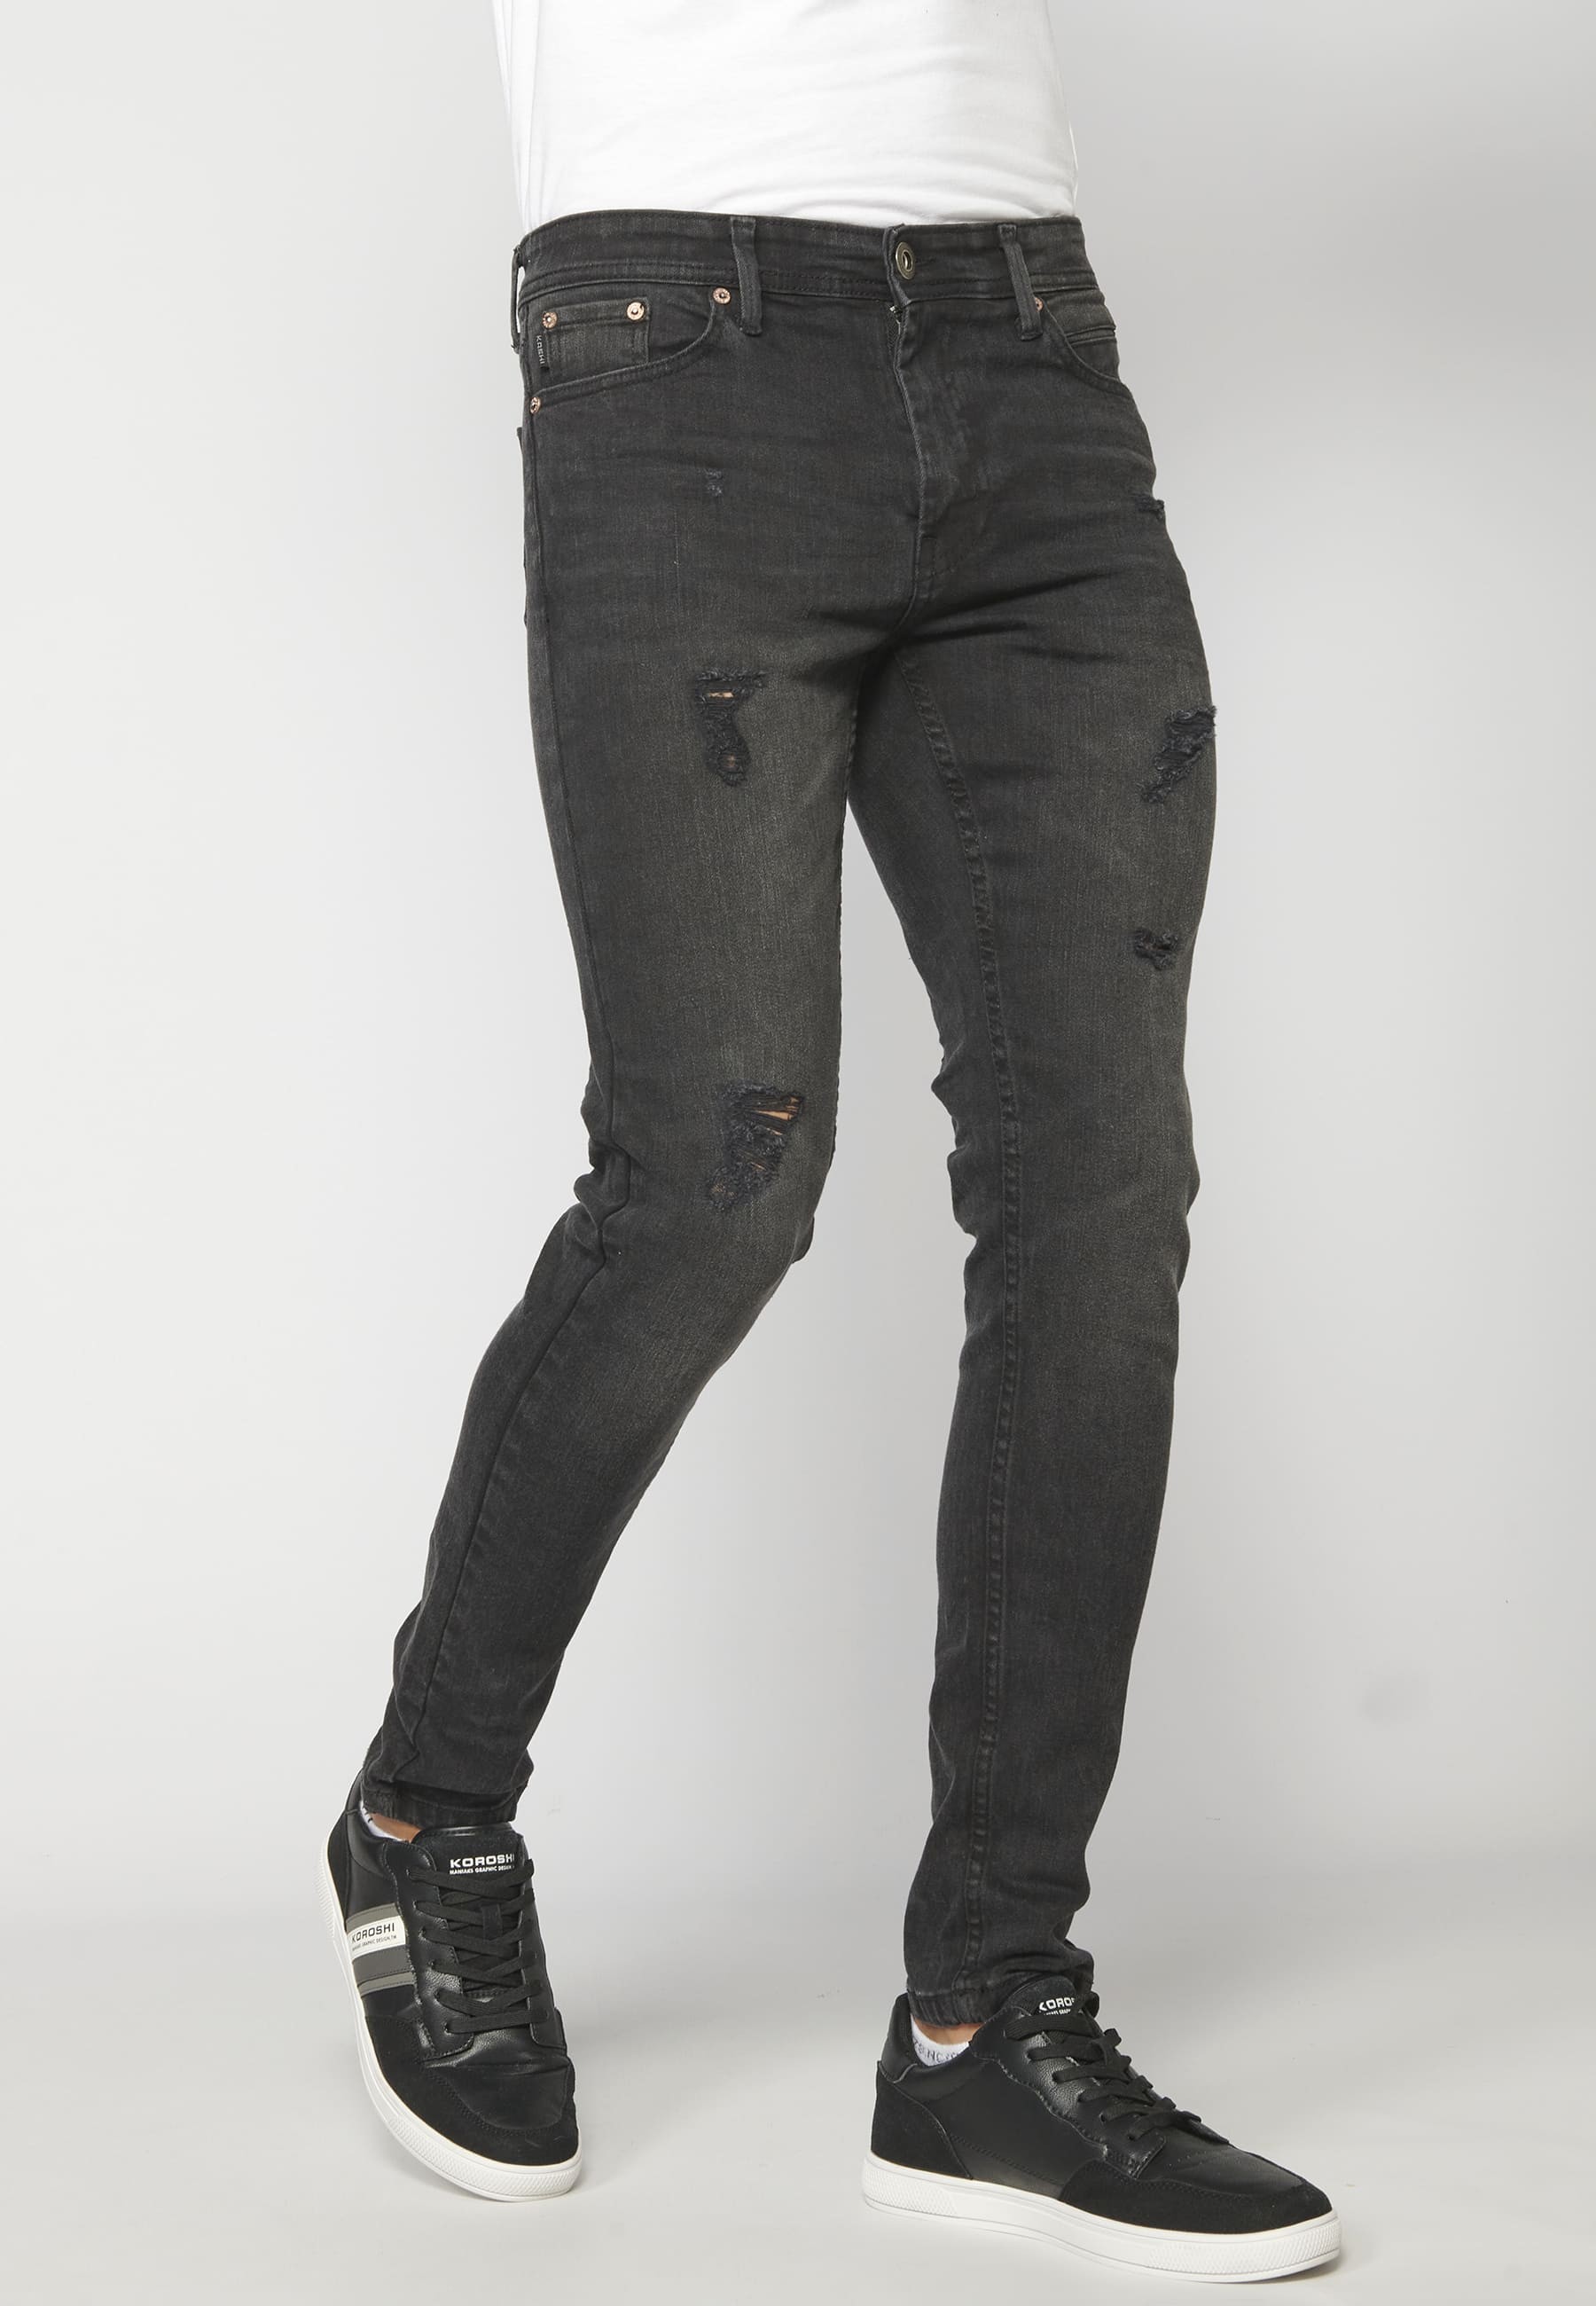 Pantalons jean denim super skinny color Negre per a Home